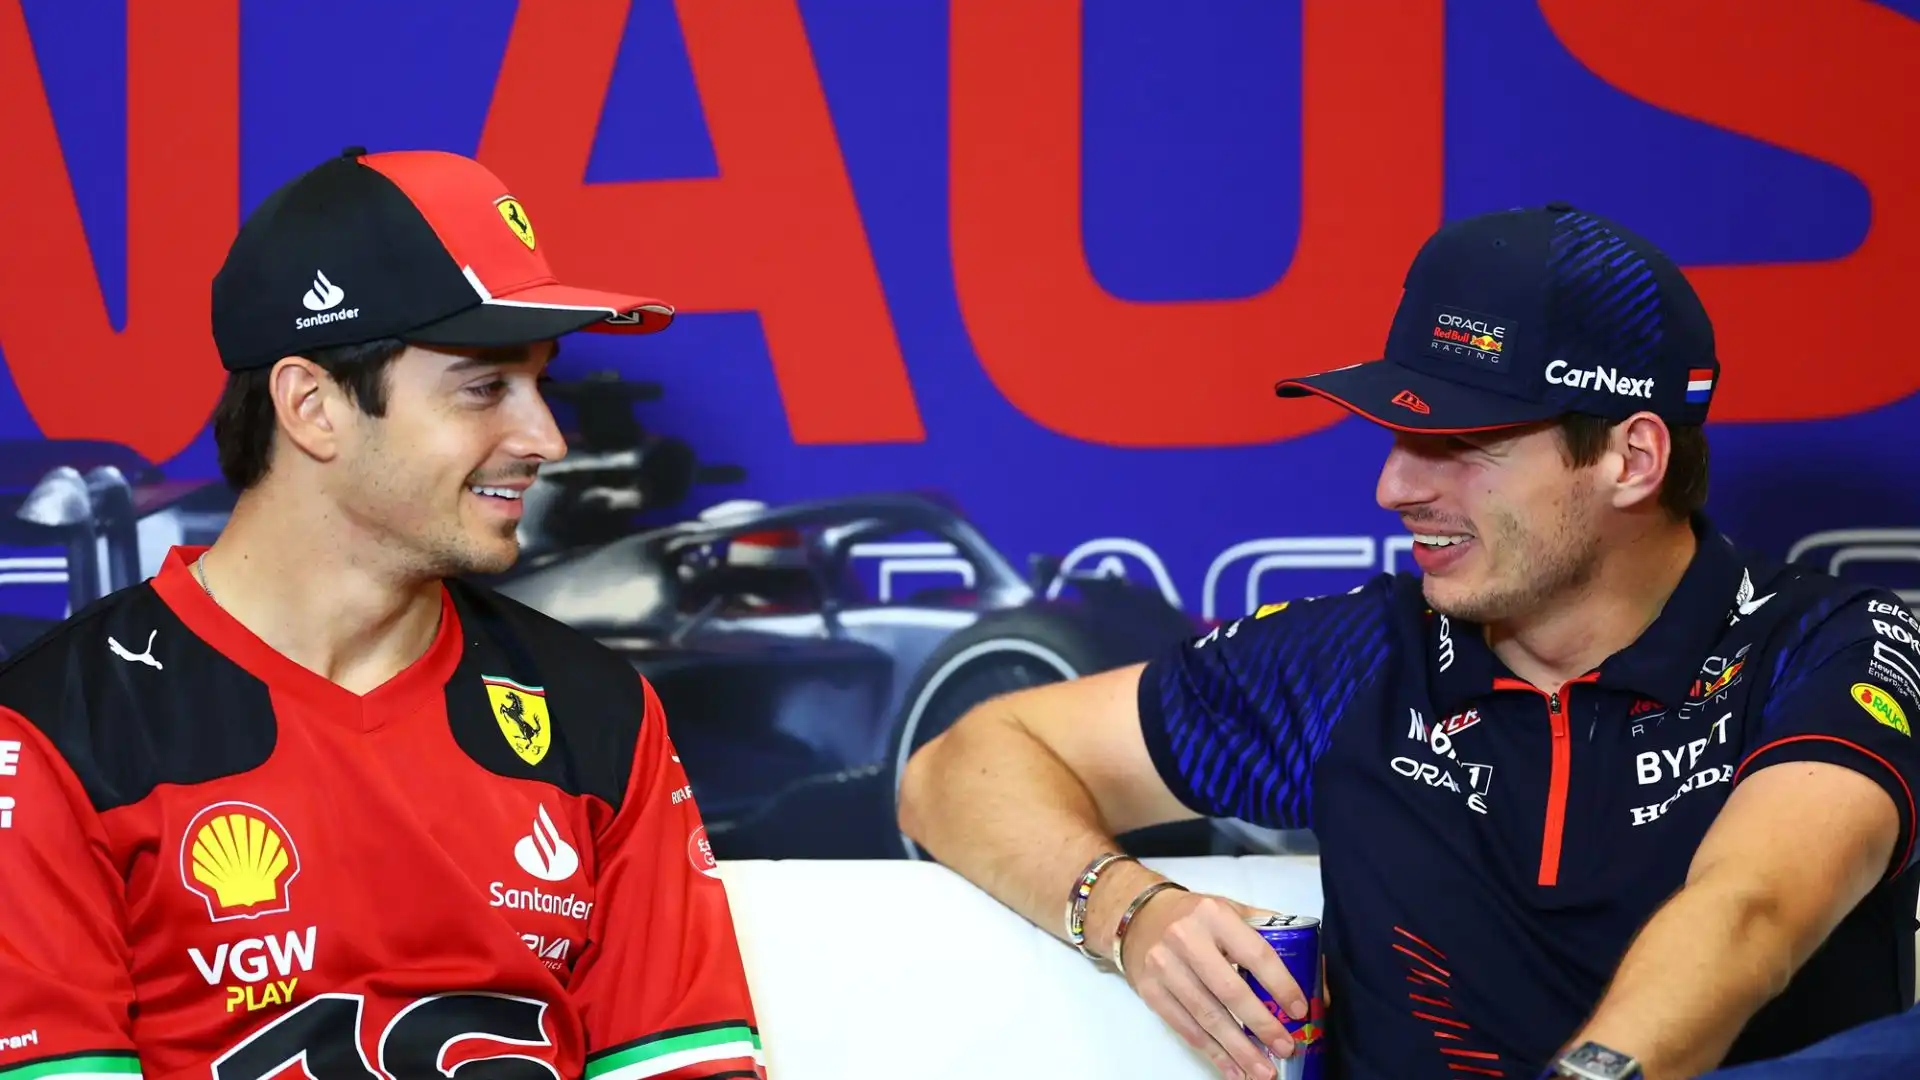 Il binomio Verstappen-Red Bull sembra inscalfibile, e Leclerc ha rivelato di averne parlato con Hamilton